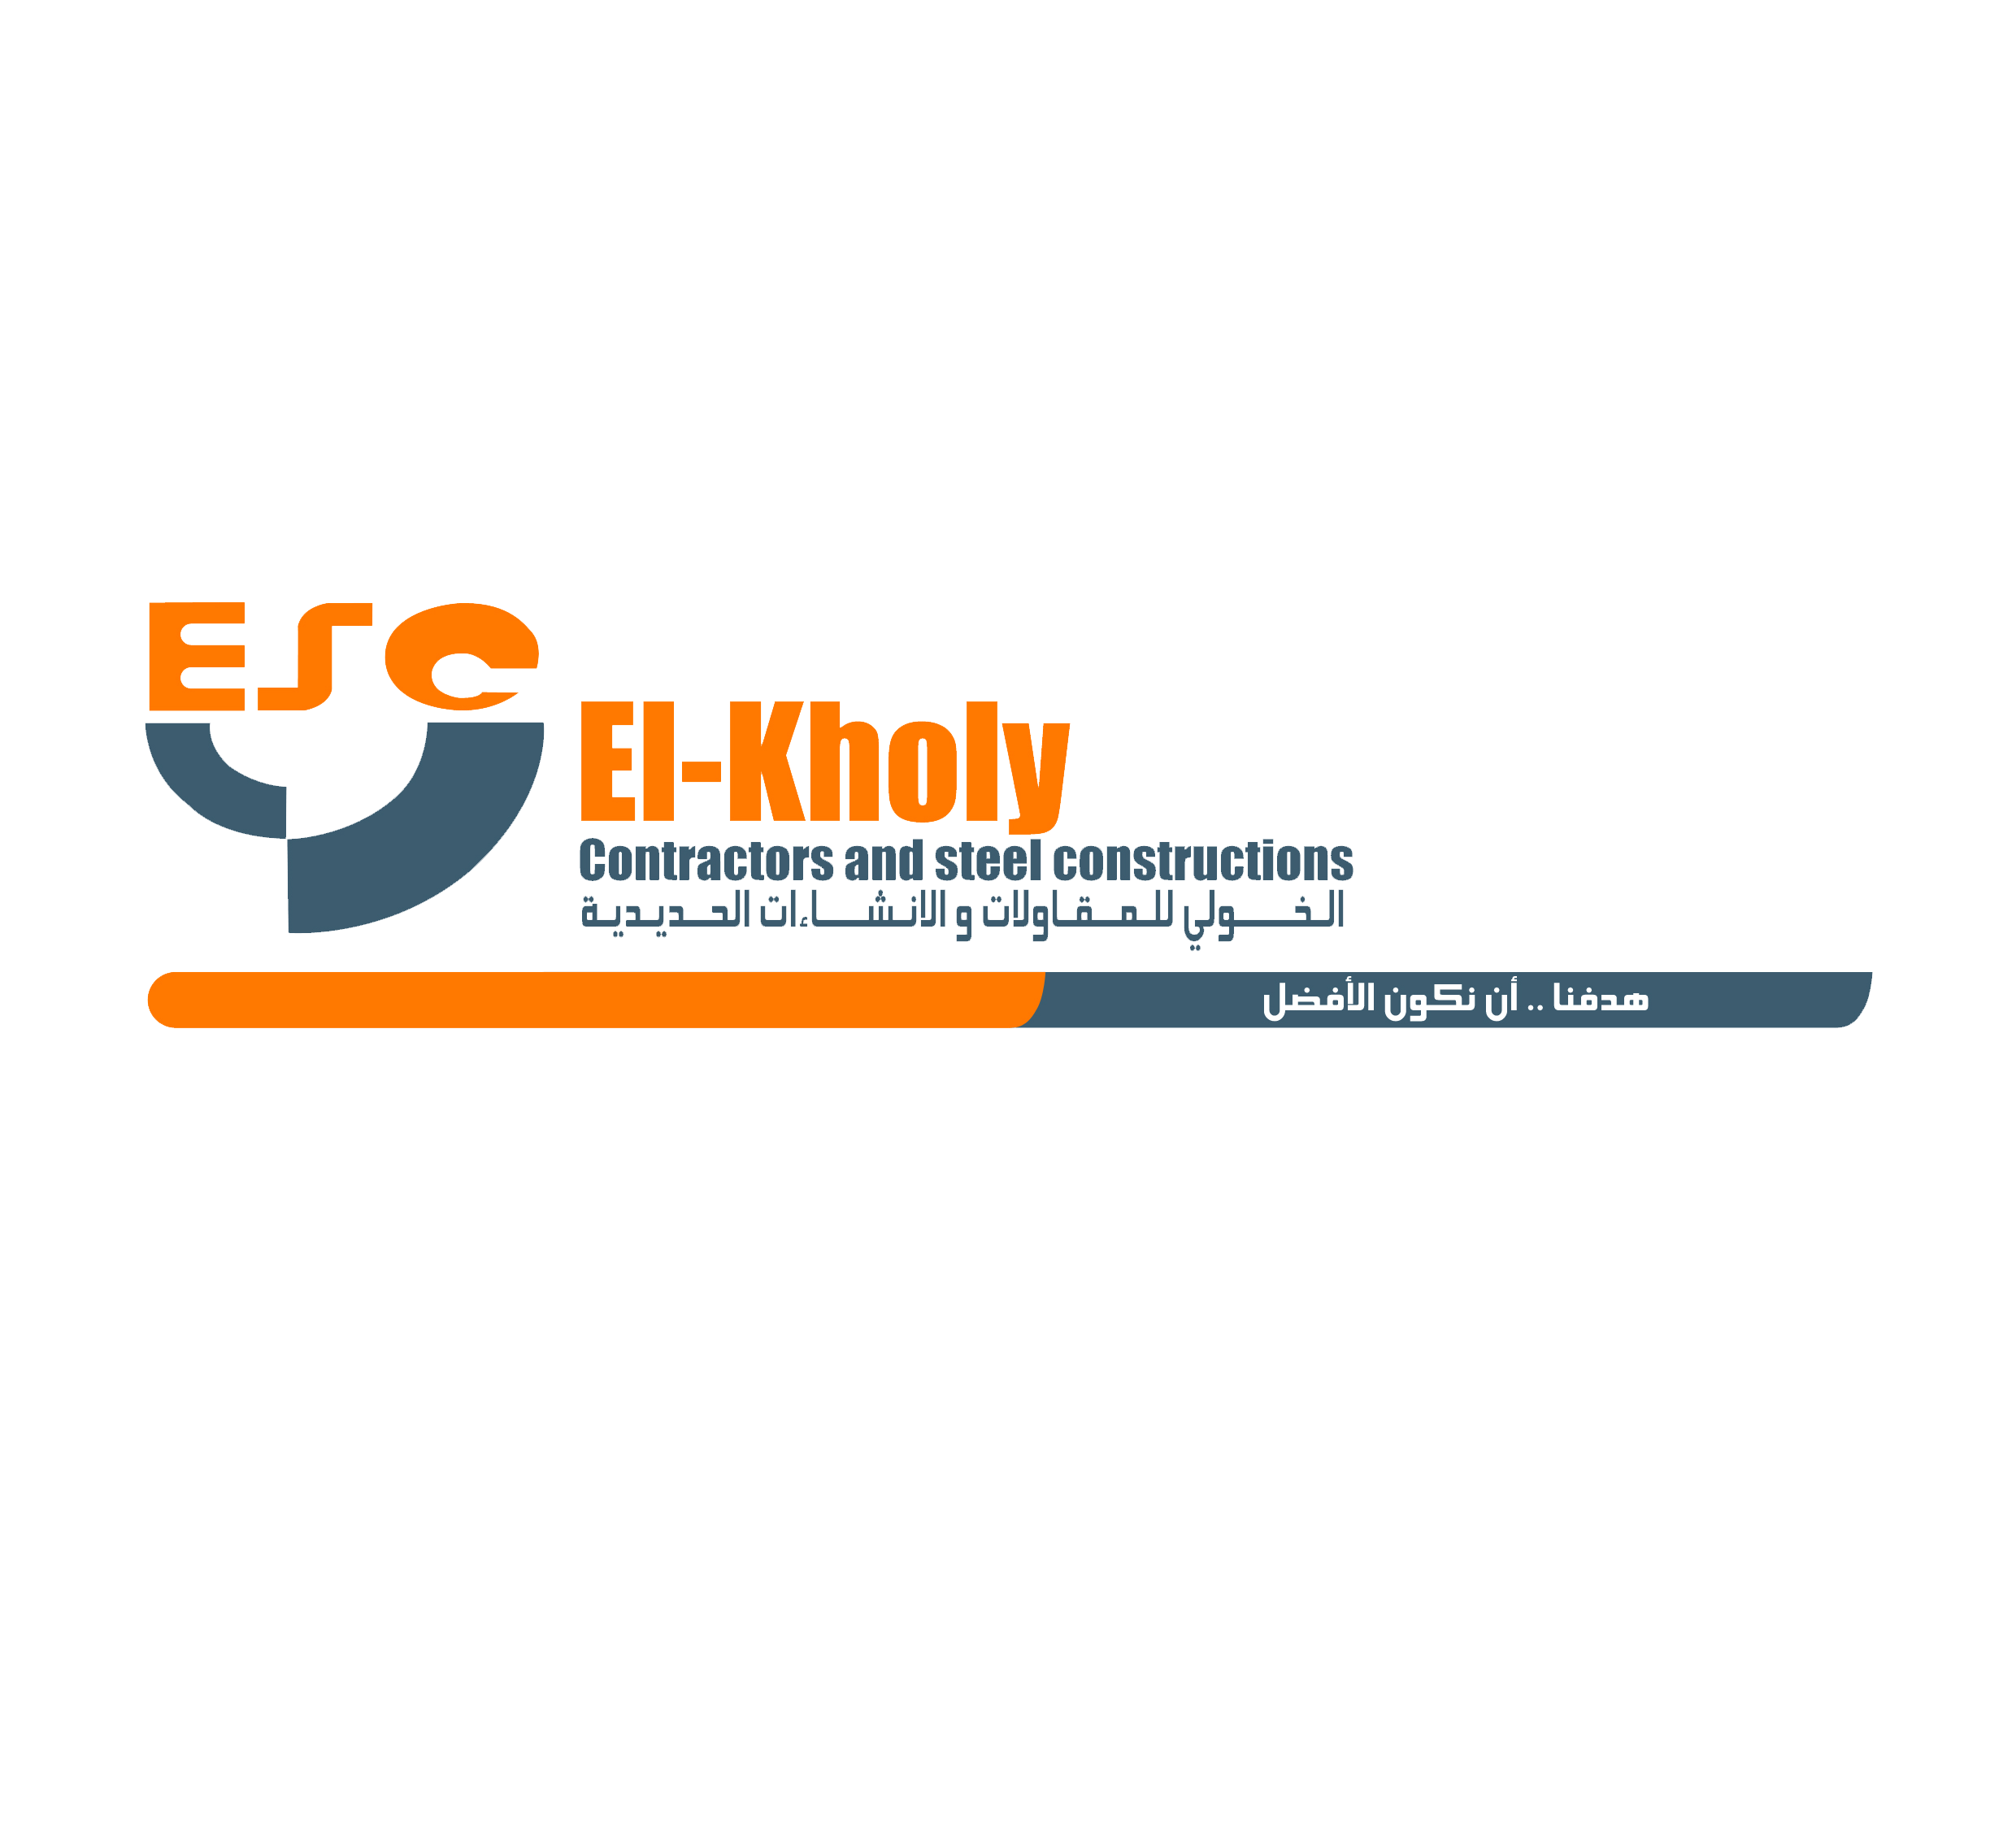 El-kholy contractors & steel construction